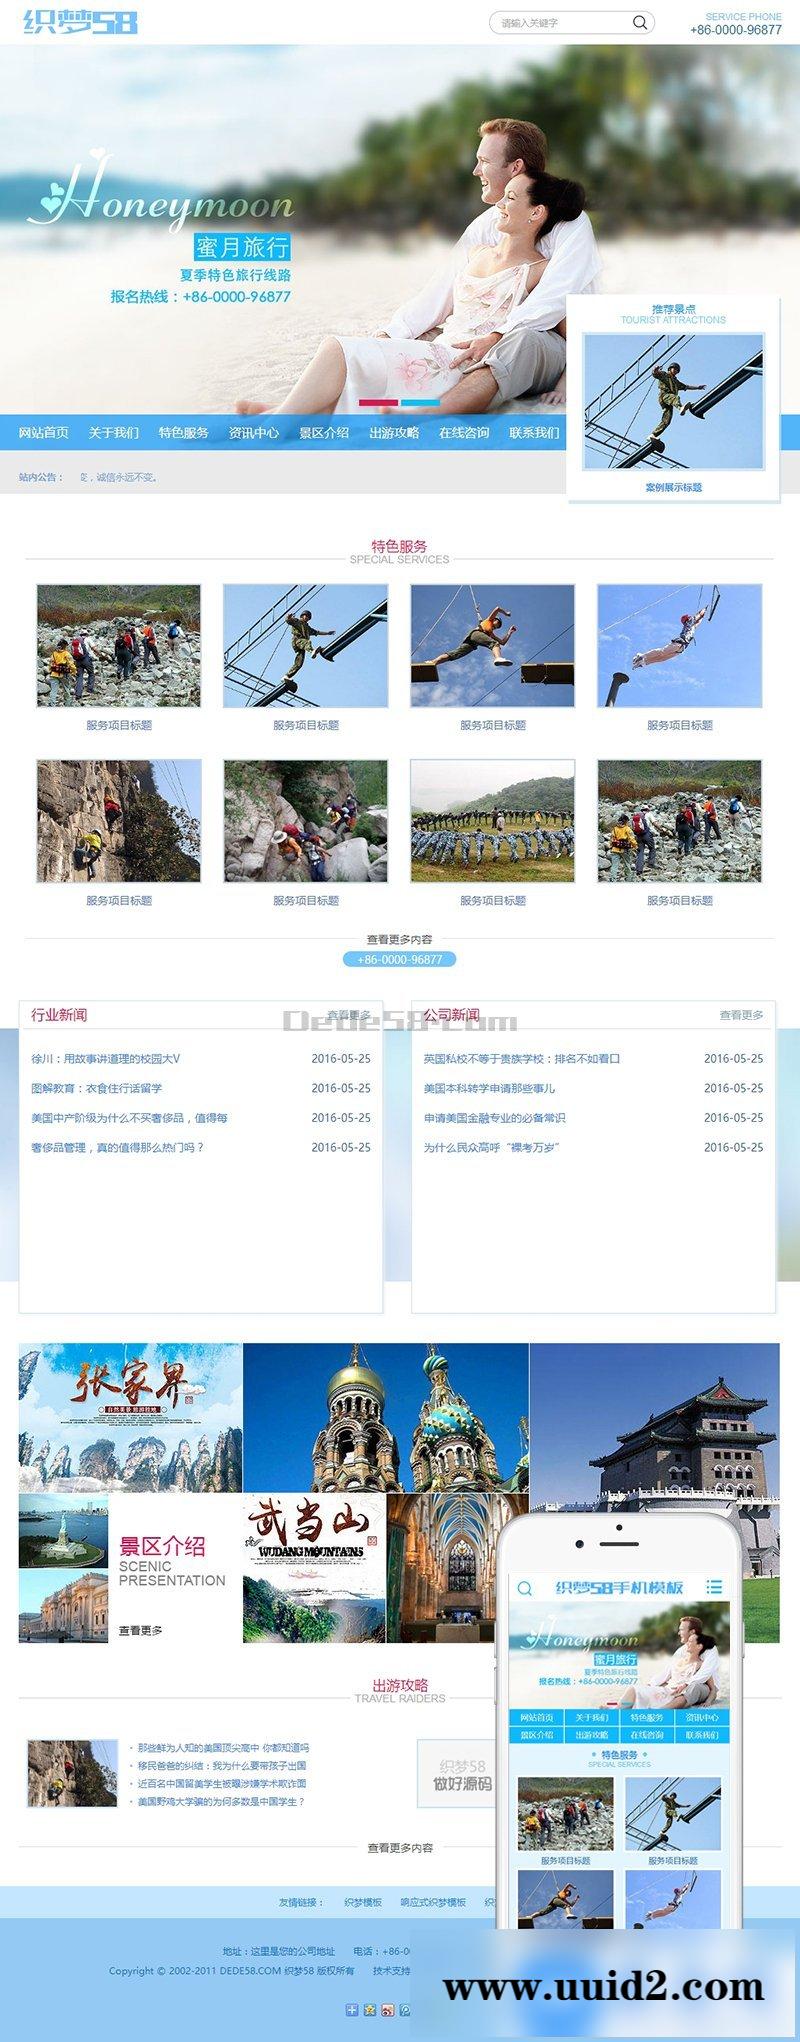 海蓝色蜜月旅行景区旅游企业网站源码 织梦模板(带手机版数据同步)